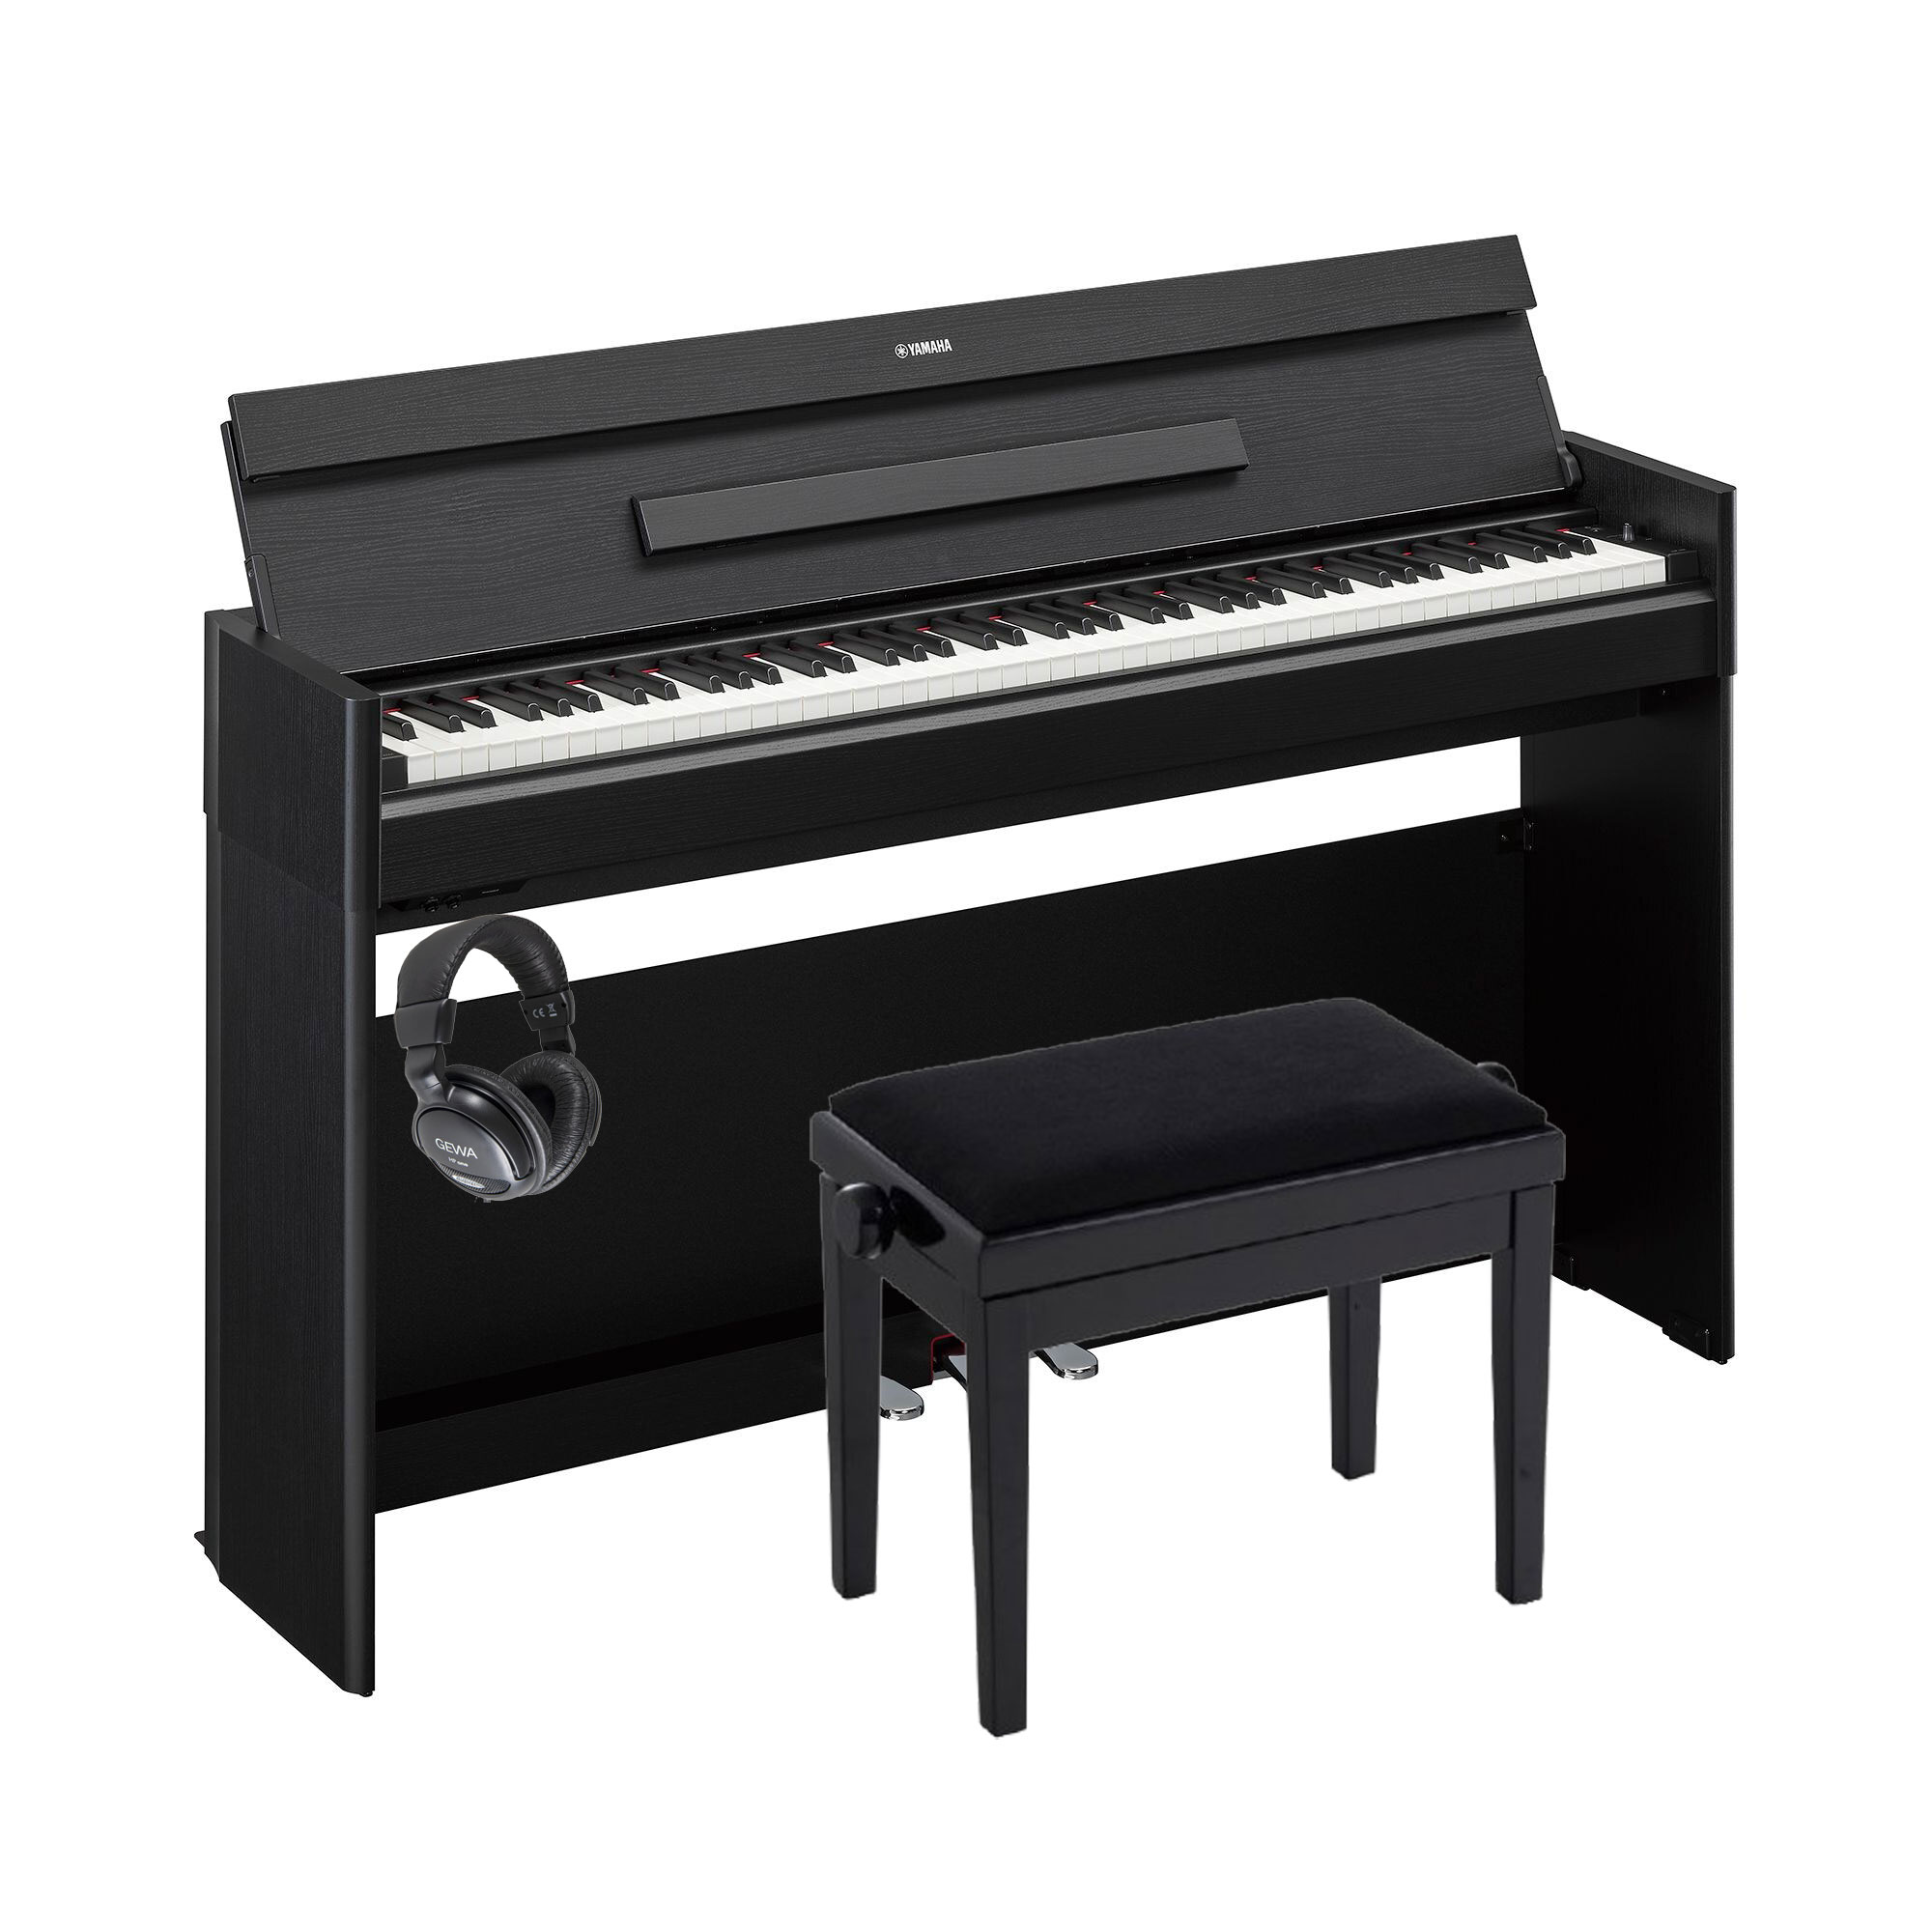 Pack piano Digital Yamaha Arius YDP-S55 con banqueta y auriculares